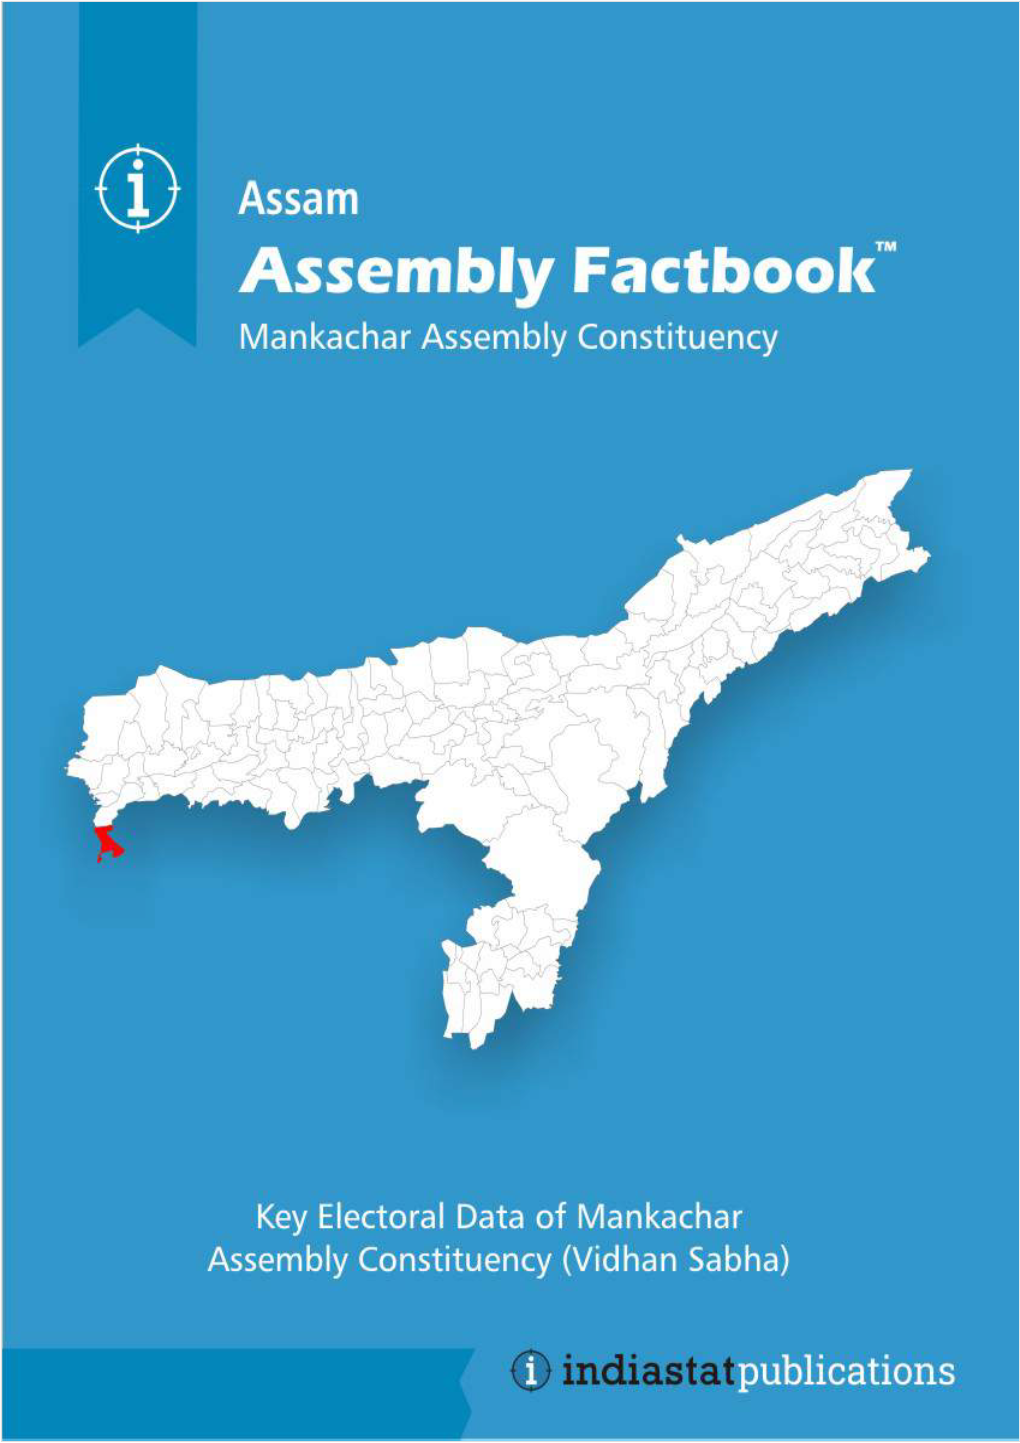 Mankachar Assembly Assam Factbook